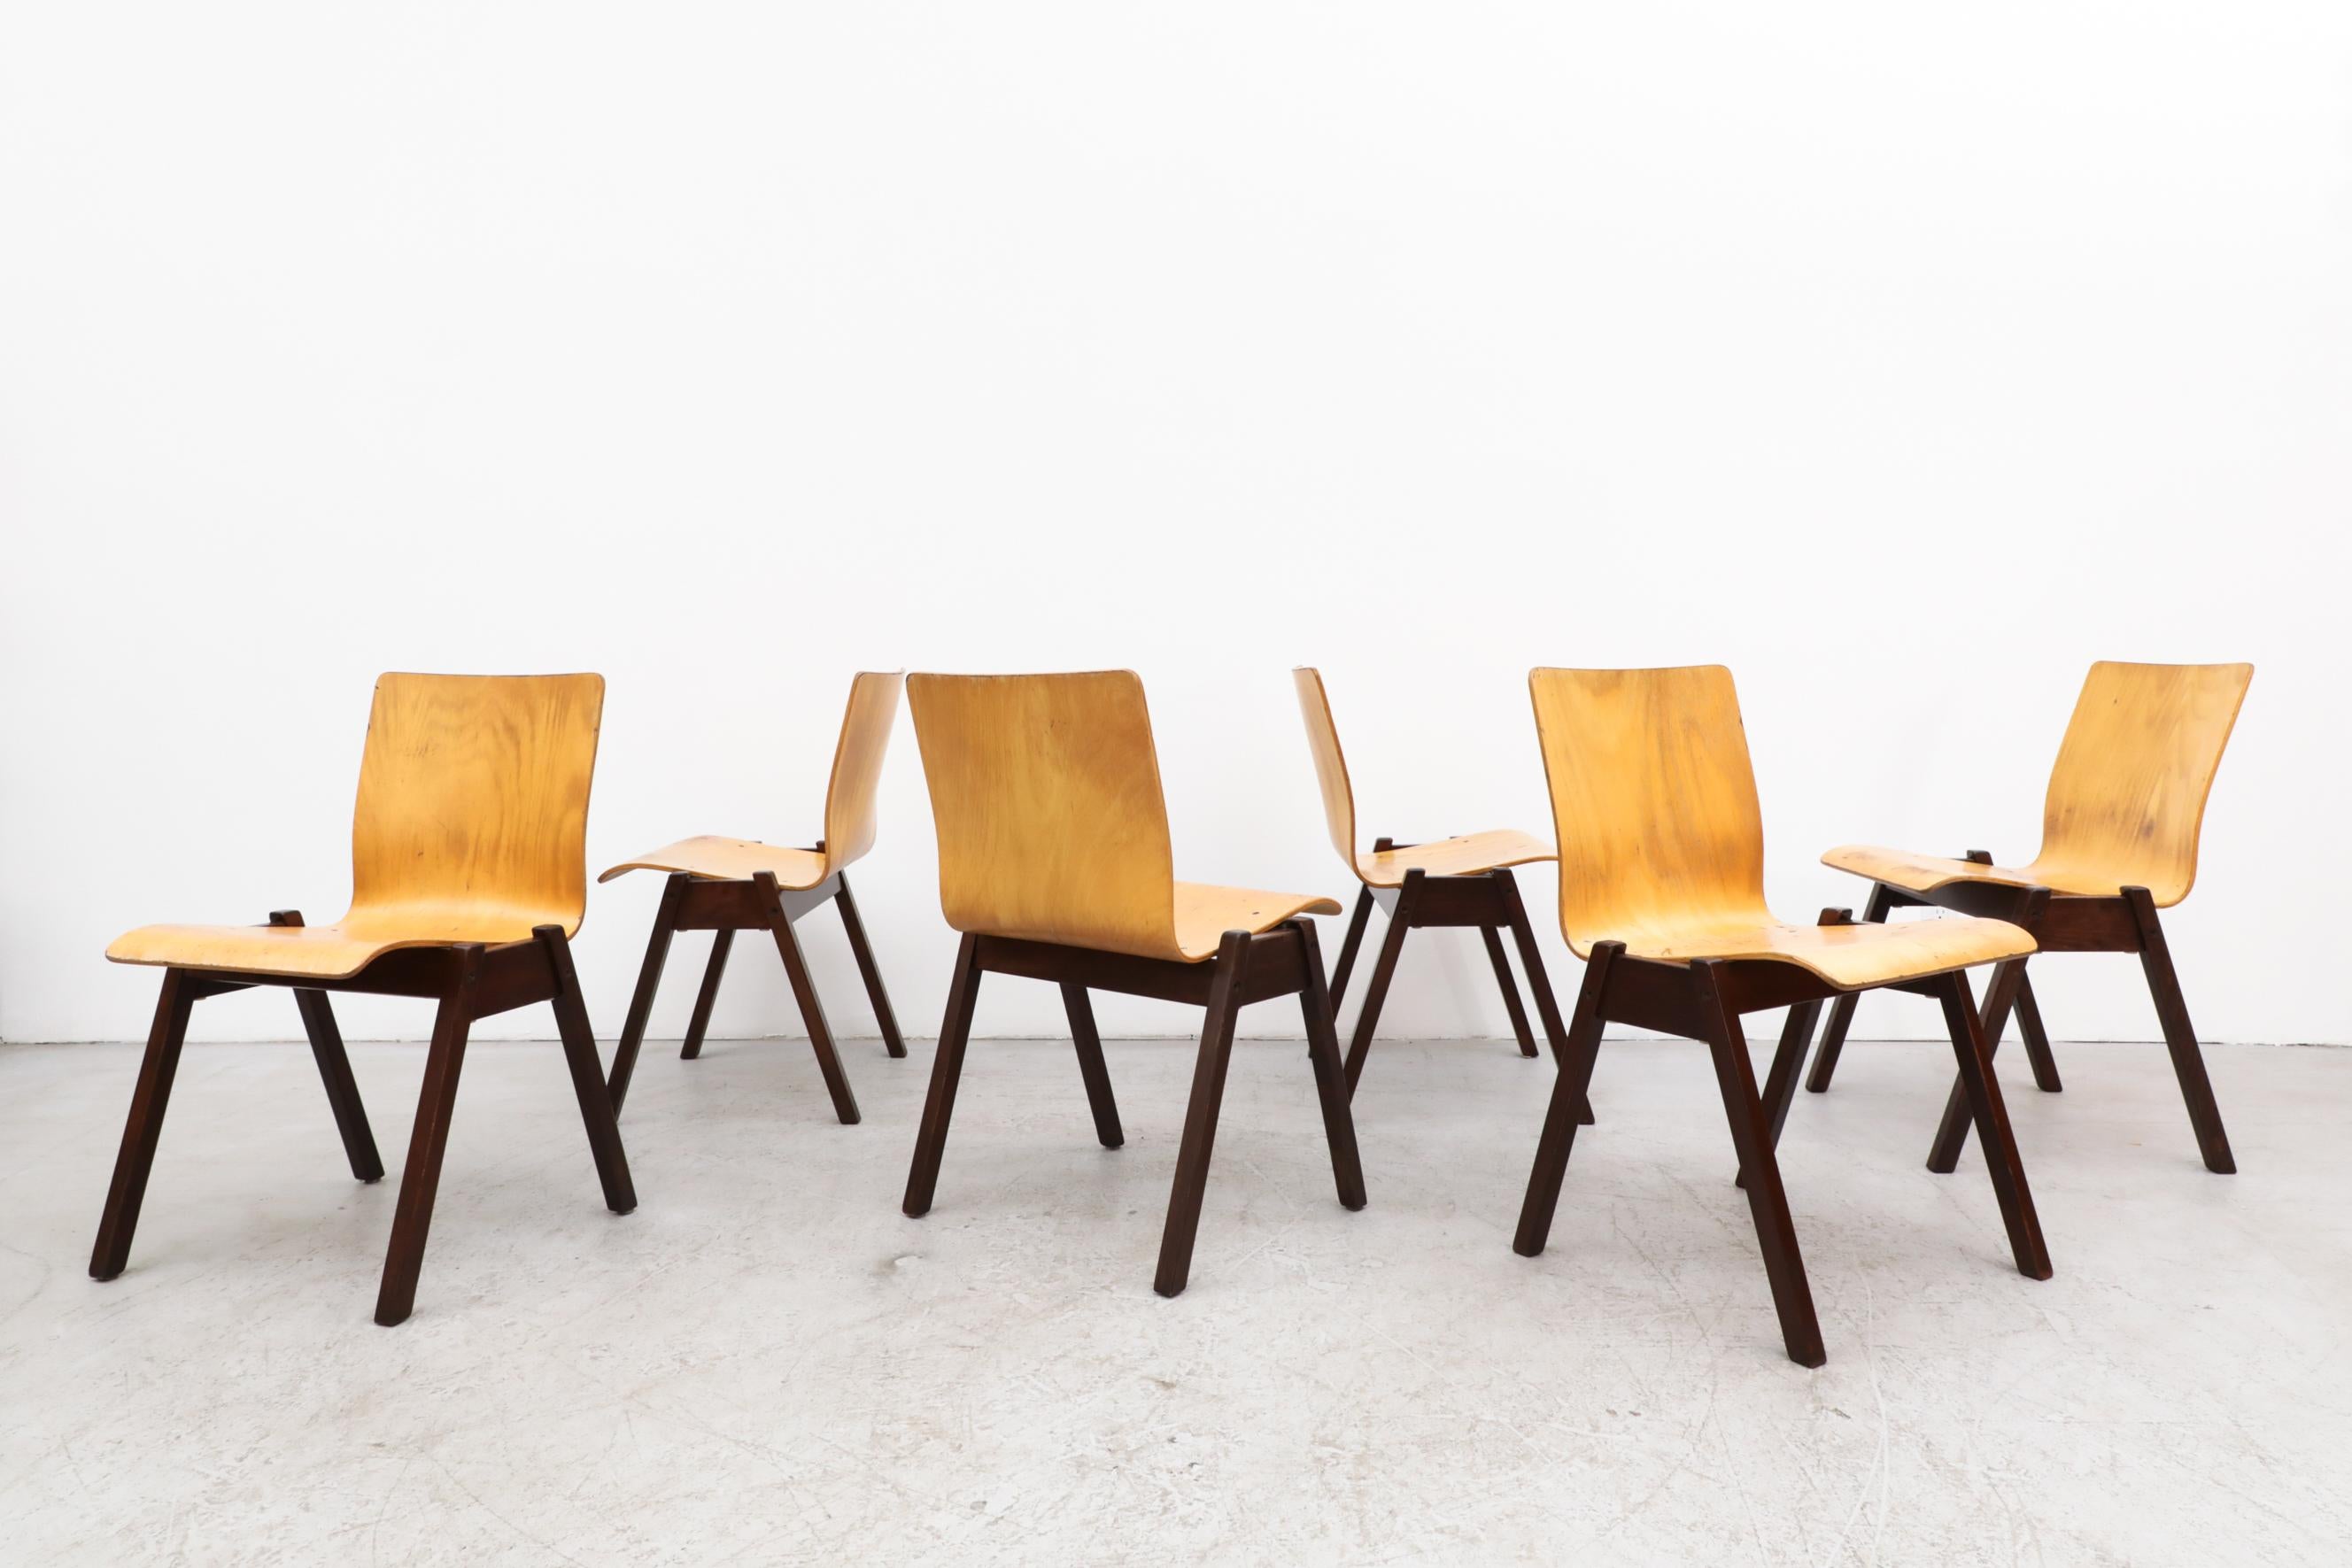 Stapelstühle im Stil von Roland Rainer mit Sitzflächen aus gebogenem Buchenholz und dunkelbraun gebeizten Holzrahmen. In sehr originalem Zustand mit sichtbaren Gebrauchsspuren. Diese wurden früher in einer Kirche verwendet. Die Abnutzung entspricht